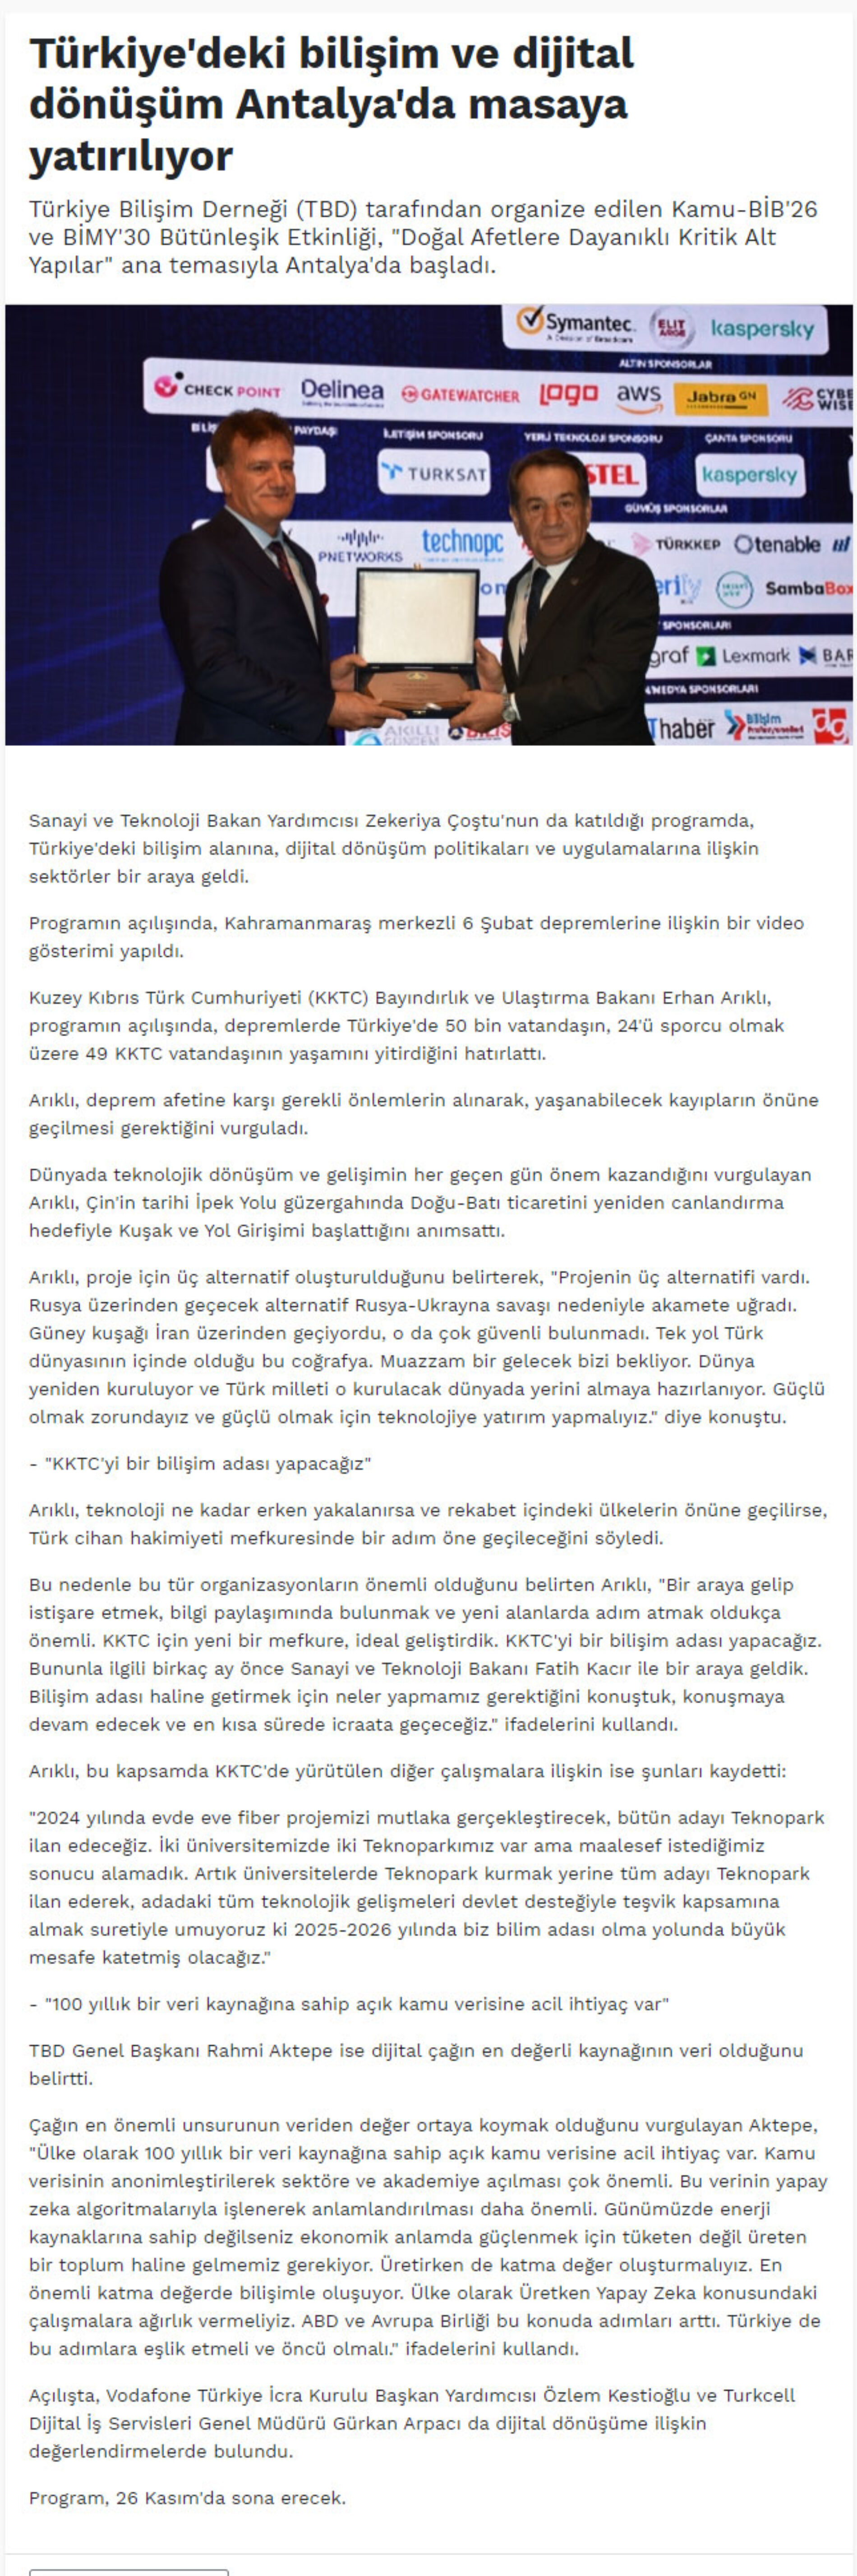 Türkiye’deki Bilişim ve Dijital Dönüşüm Antalya’da Masaya Yatırılıyor – RADYO 80